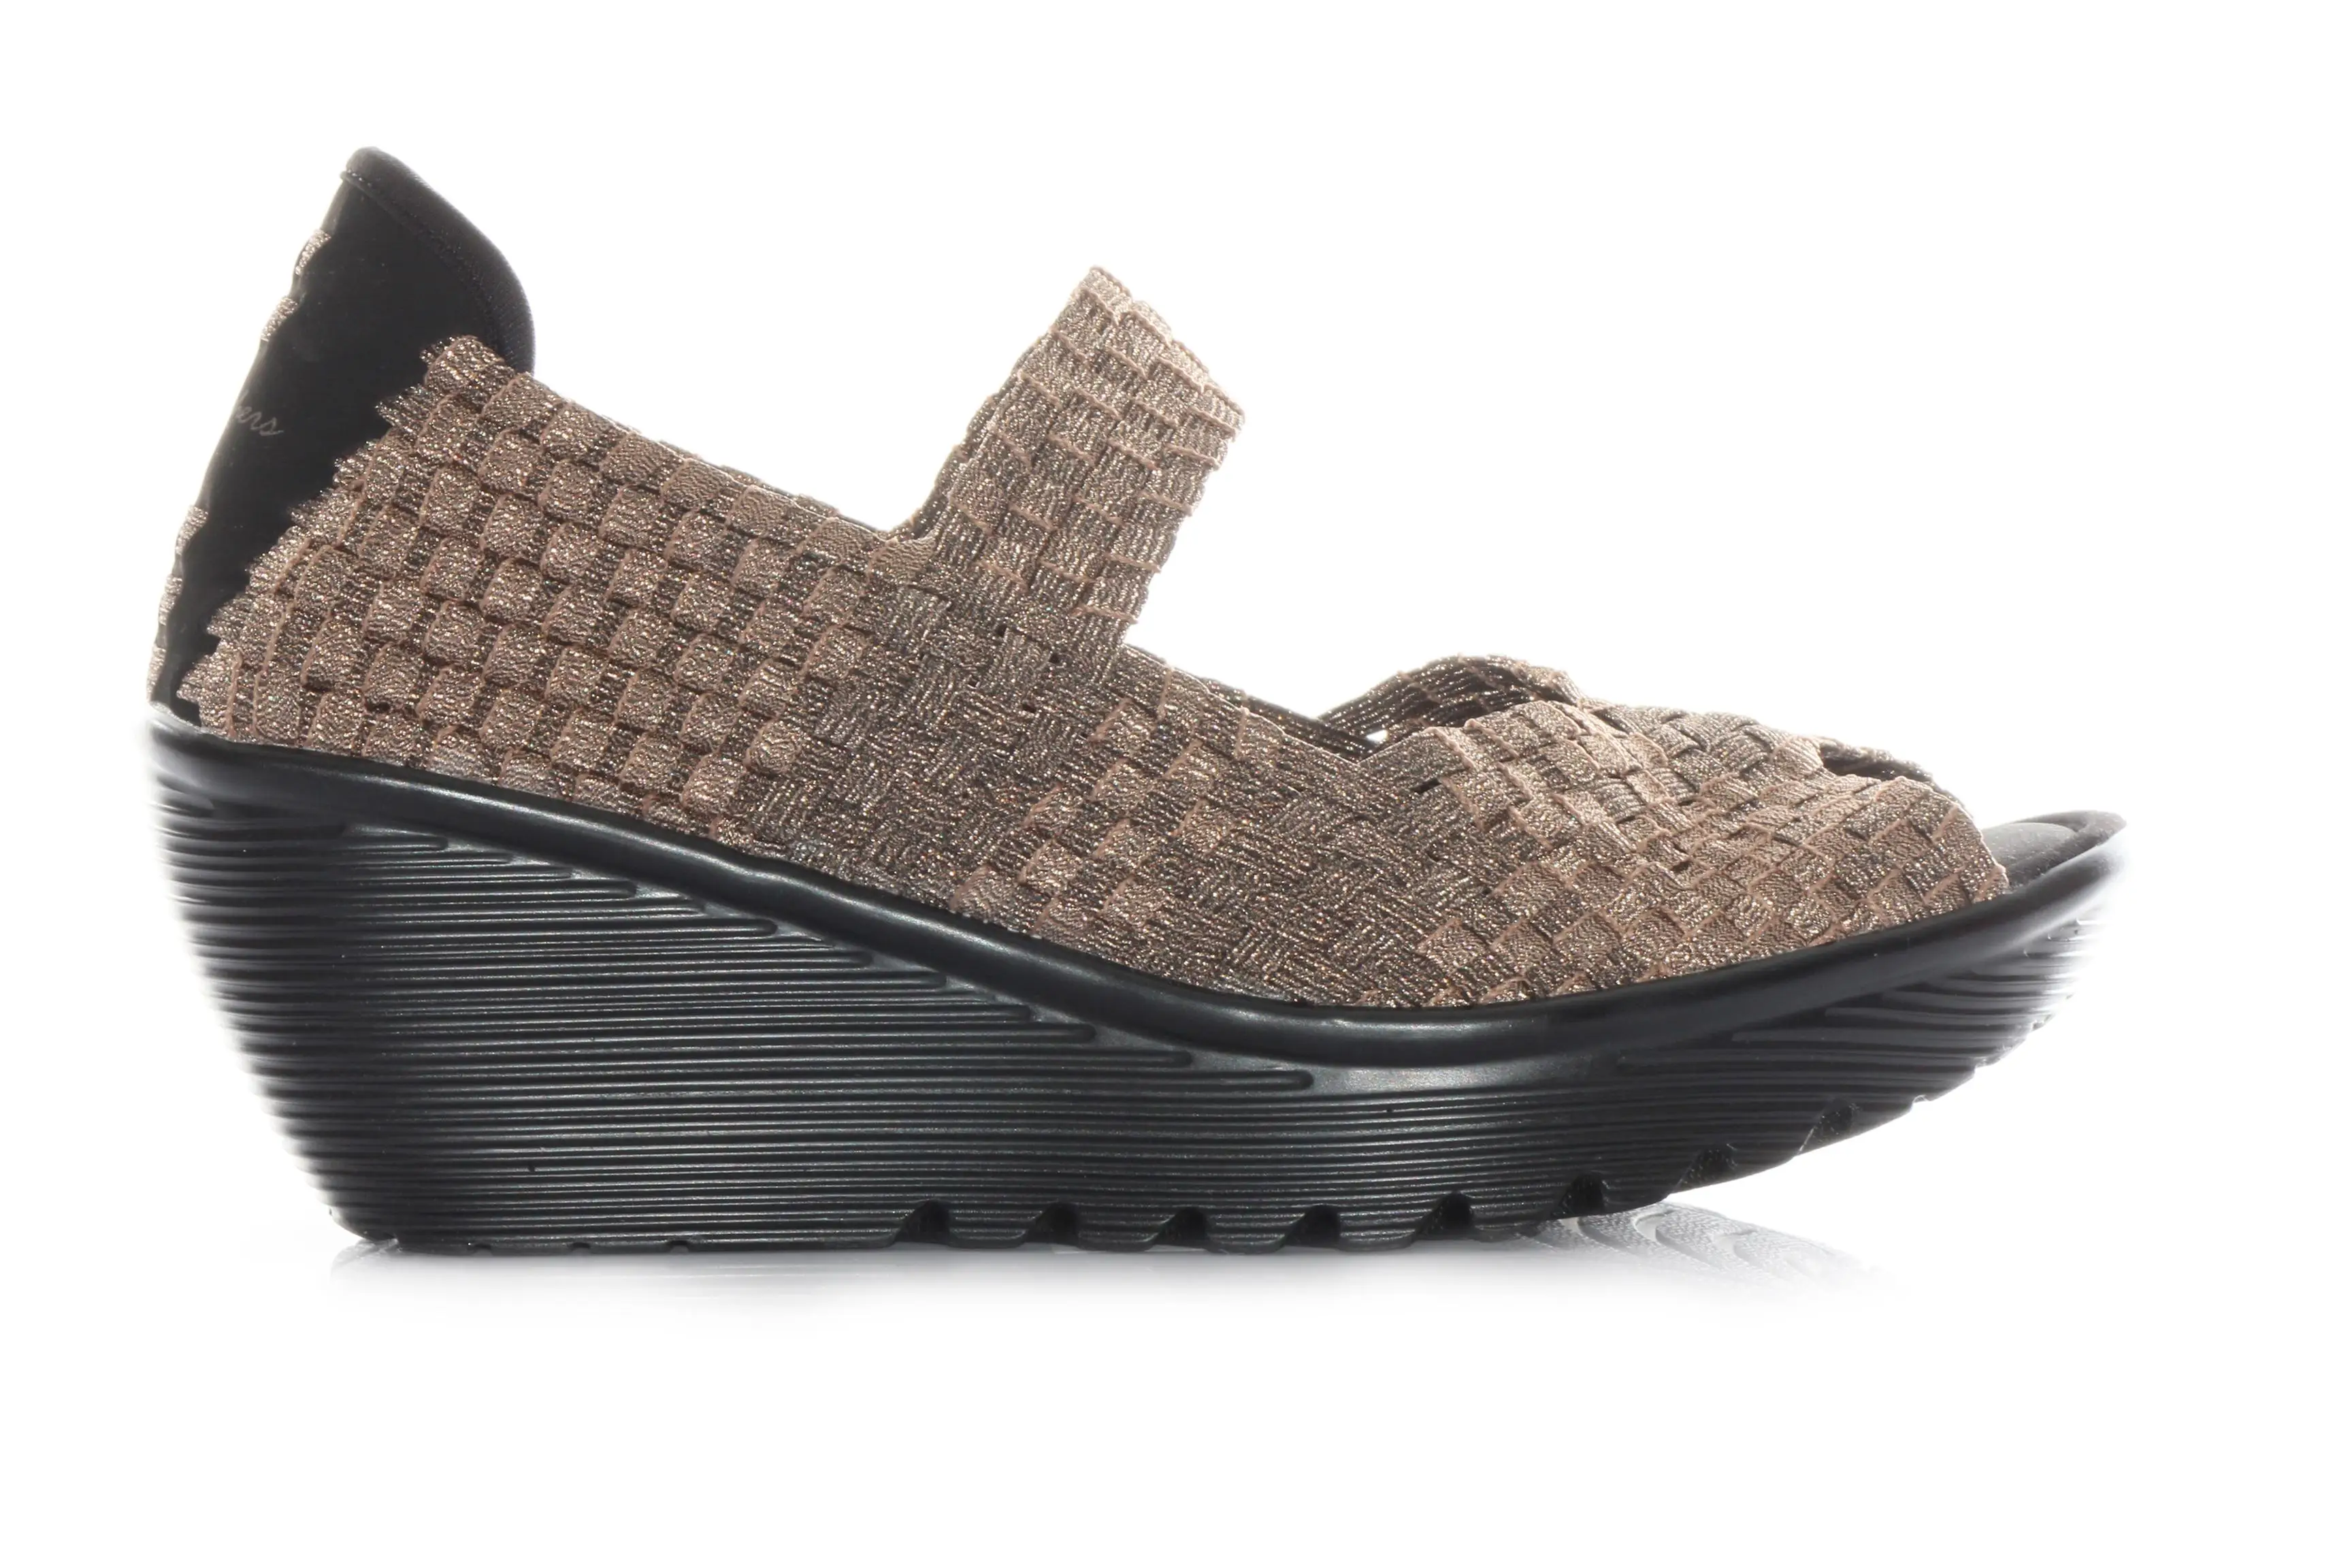 SKECHERS MUJER SKECH 38411 PIEL SANDALIAS CUNA-in Women's Sandals from ...